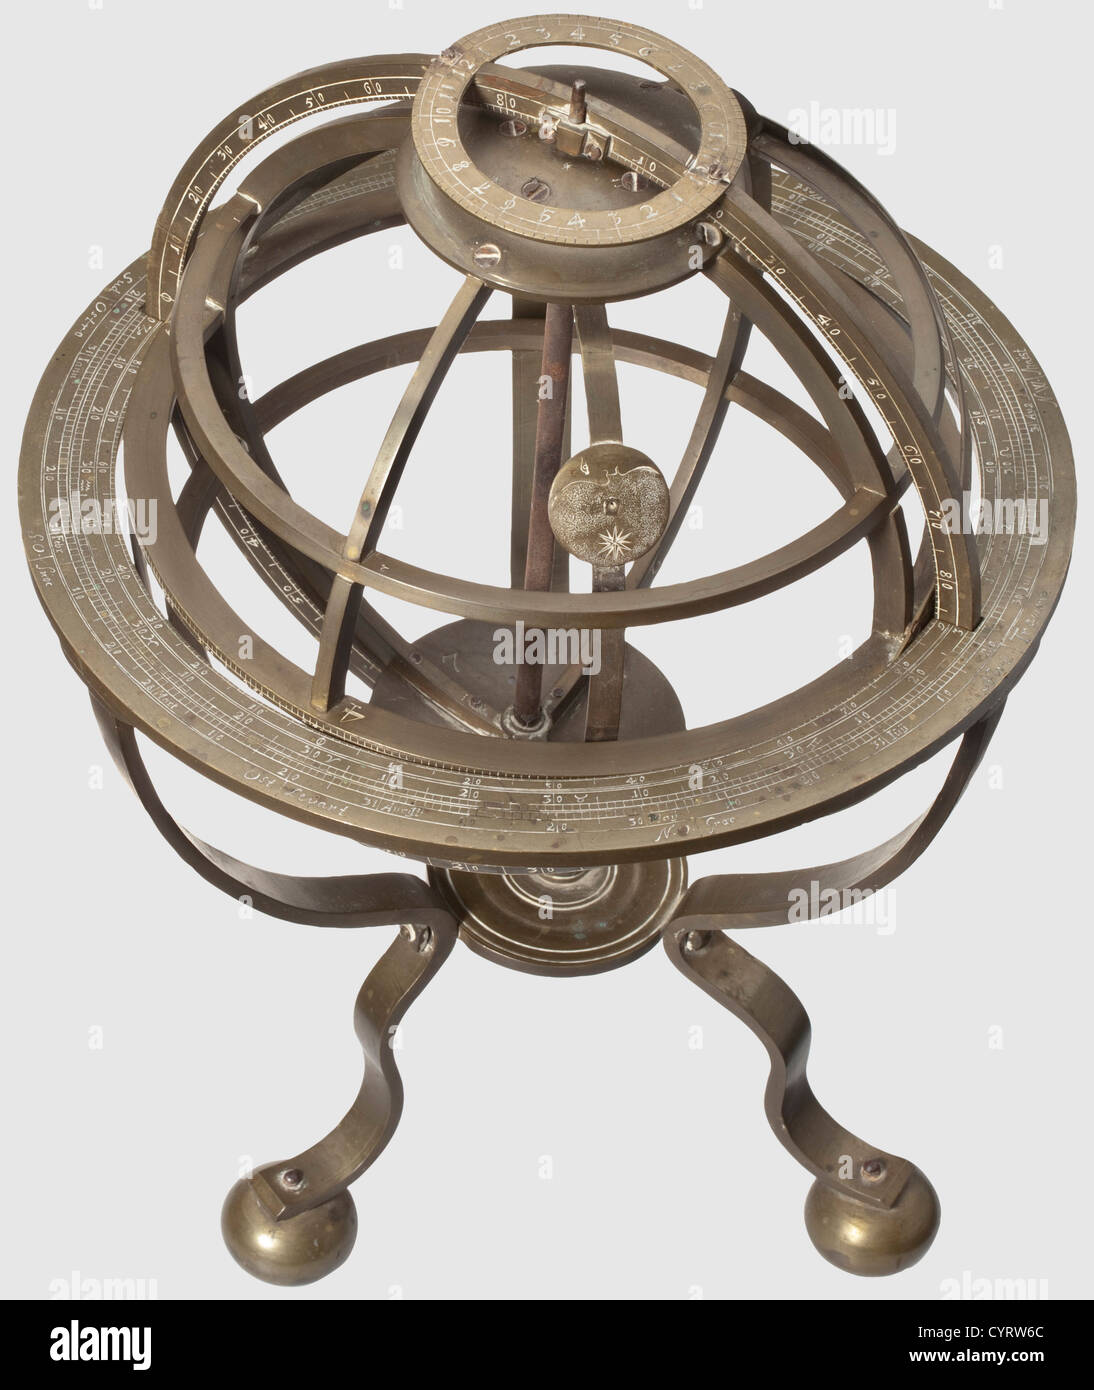 Una sfera armillare fiamminga con anello eclisciato, struttura interamente metallica del 18 ° secolo fatta di ottone con patina età scura.sfera con bande orizzontali continue all'equatore e ai tropici così come segni per il cerchio polare.la fascia equatore con 360 gradi finemente inciso scaling.Ecliptic ring con scala e segni astrologici.movibile clasp Con simbolo per la luna all'interno.treppiede sui piedini della sfera,l'anello di fissaggio con elaborato, scala multipla e le direzioni cardinali.parti numerate,viti con segni di punti.alcune piccole parti mancanti.,diritti aggiuntivi-distanze-non disponibili Foto Stock